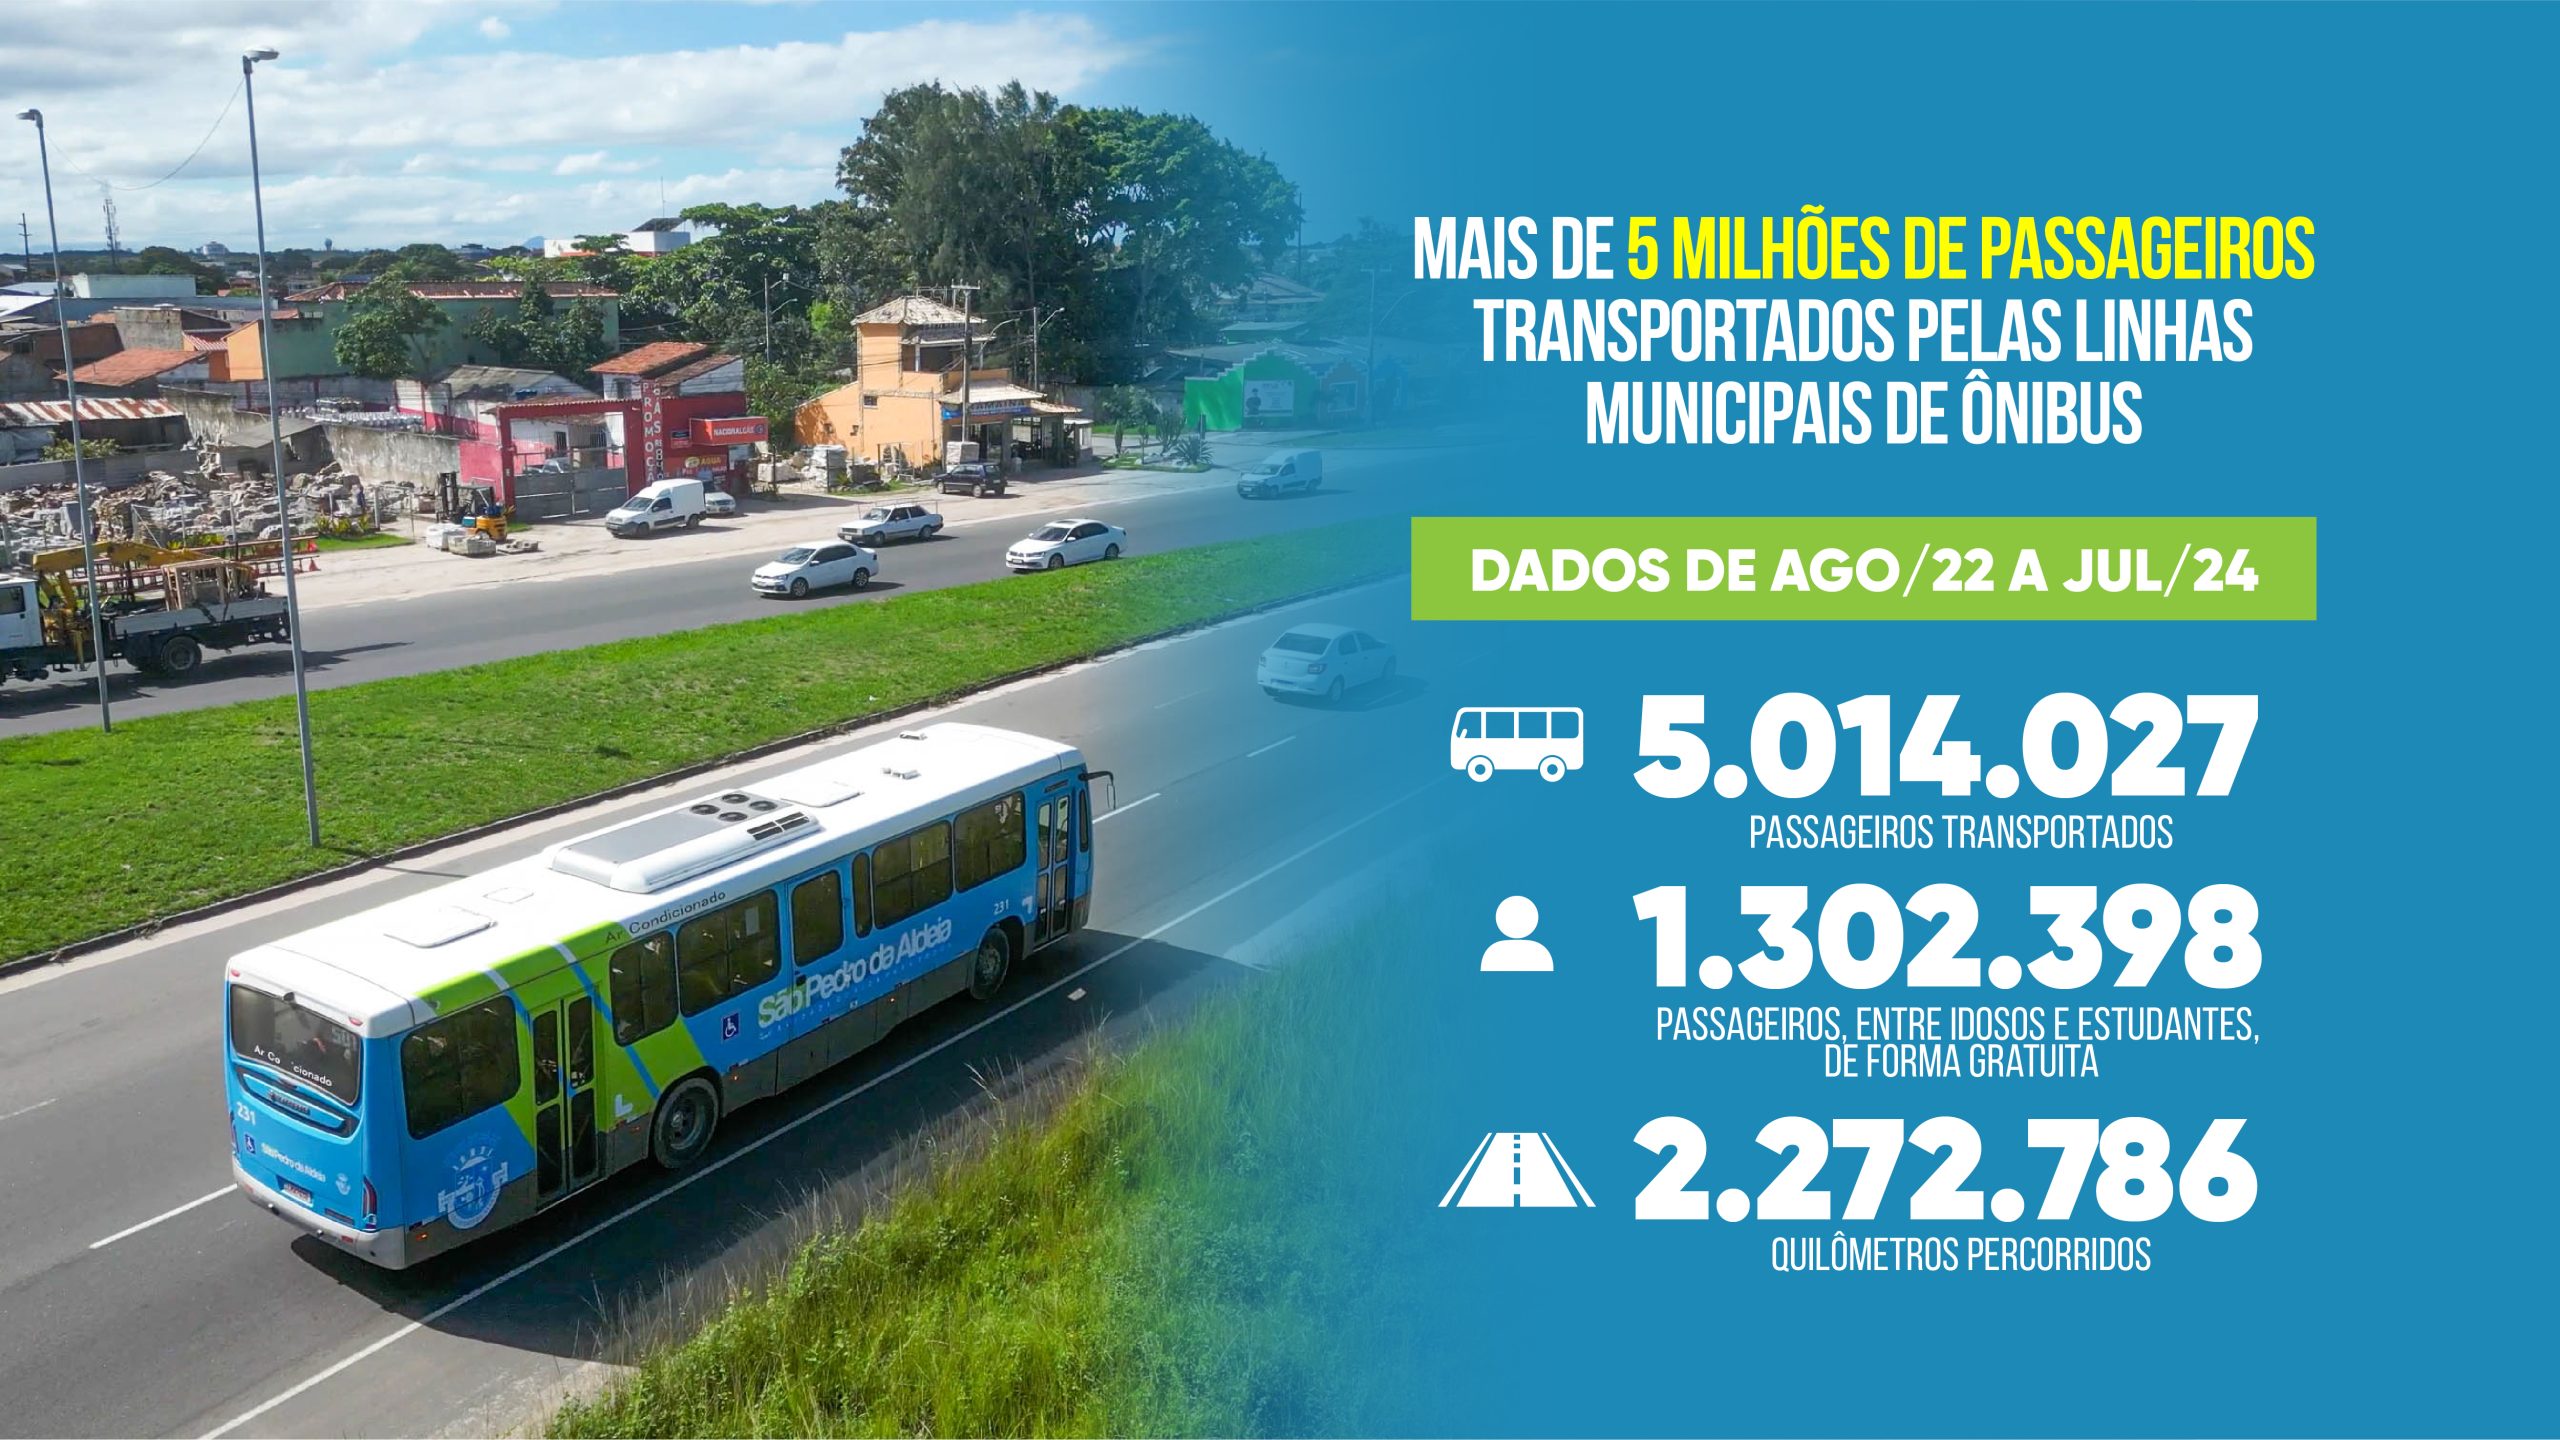 Ônibus municipais já transportaram mais de 5 milhões de passageiros em São Pedro da Aldeia